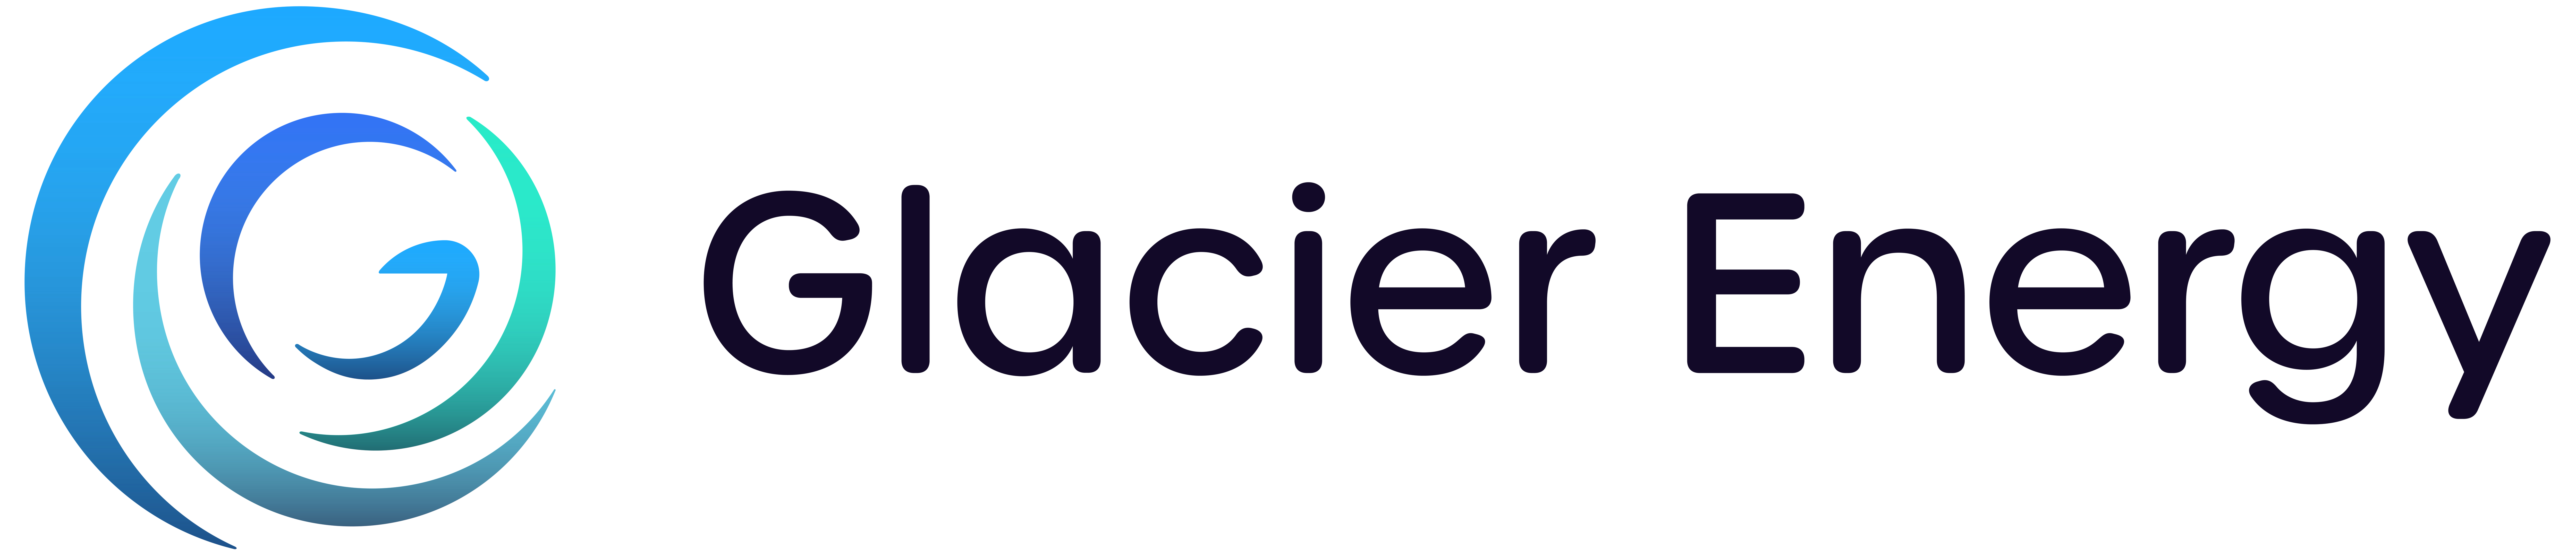 Glacier Energy Logo